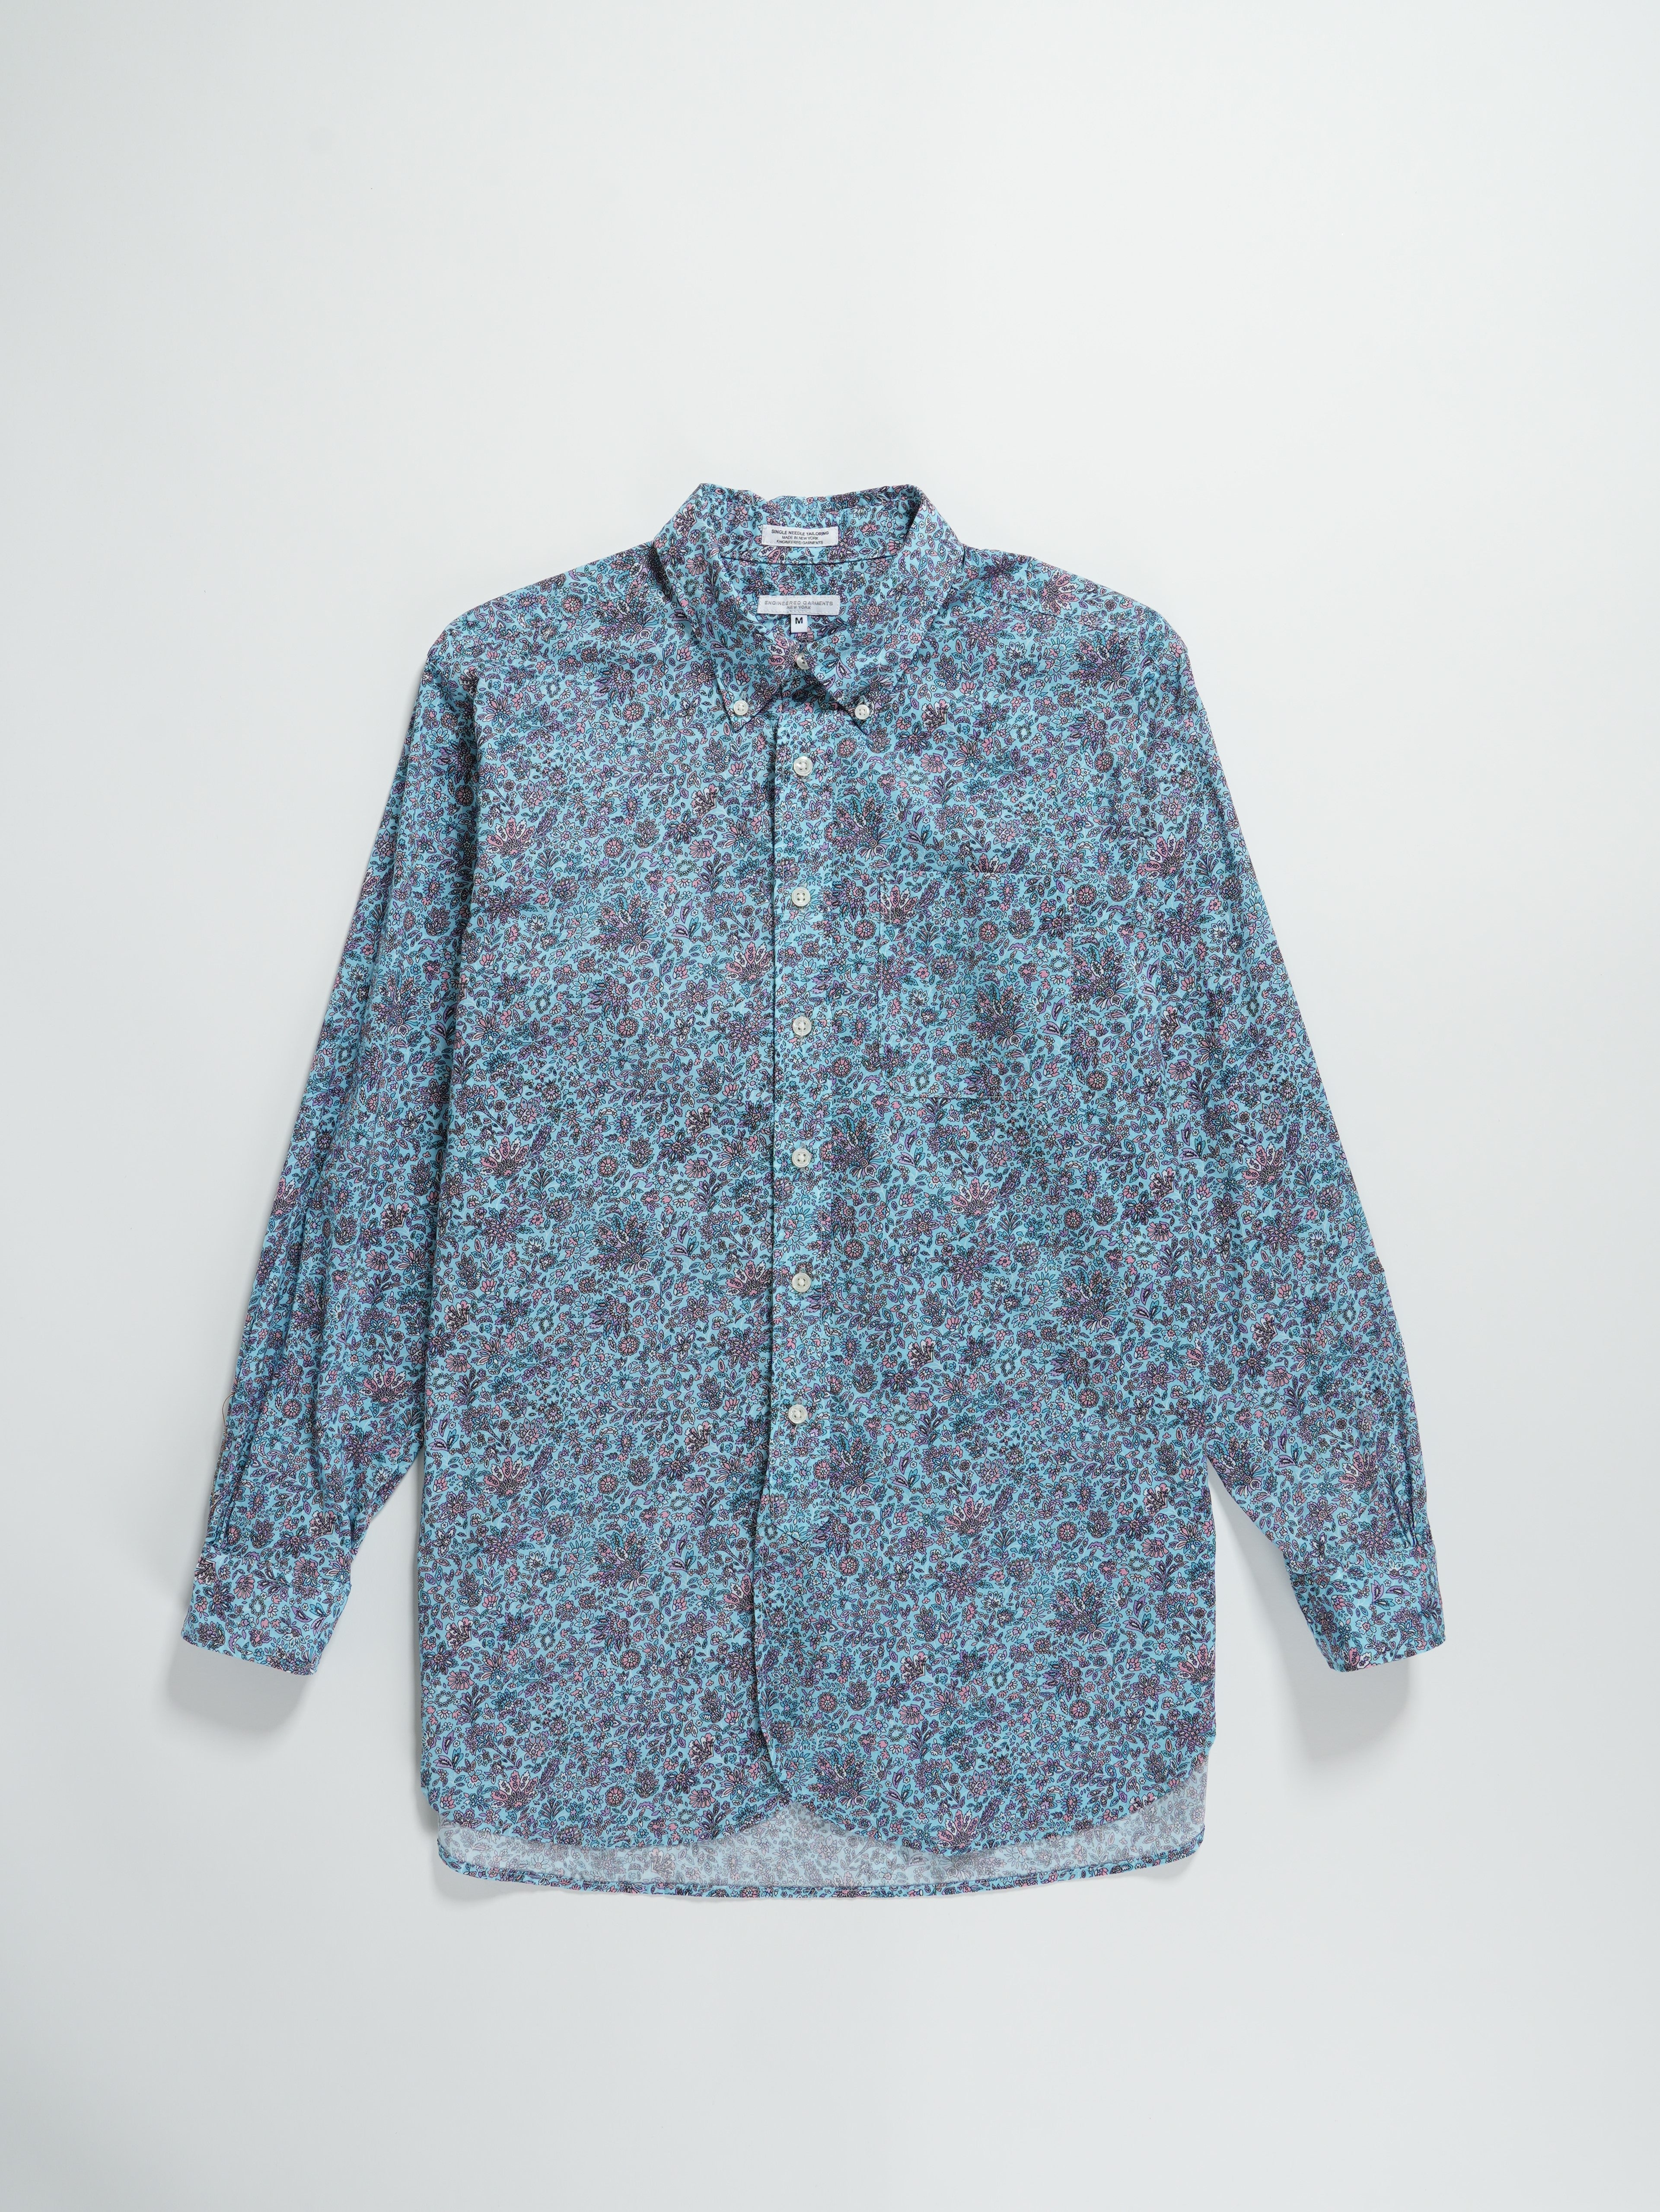 19 Century BD Shirt - Lt. Blue Cotton Floral Lawn